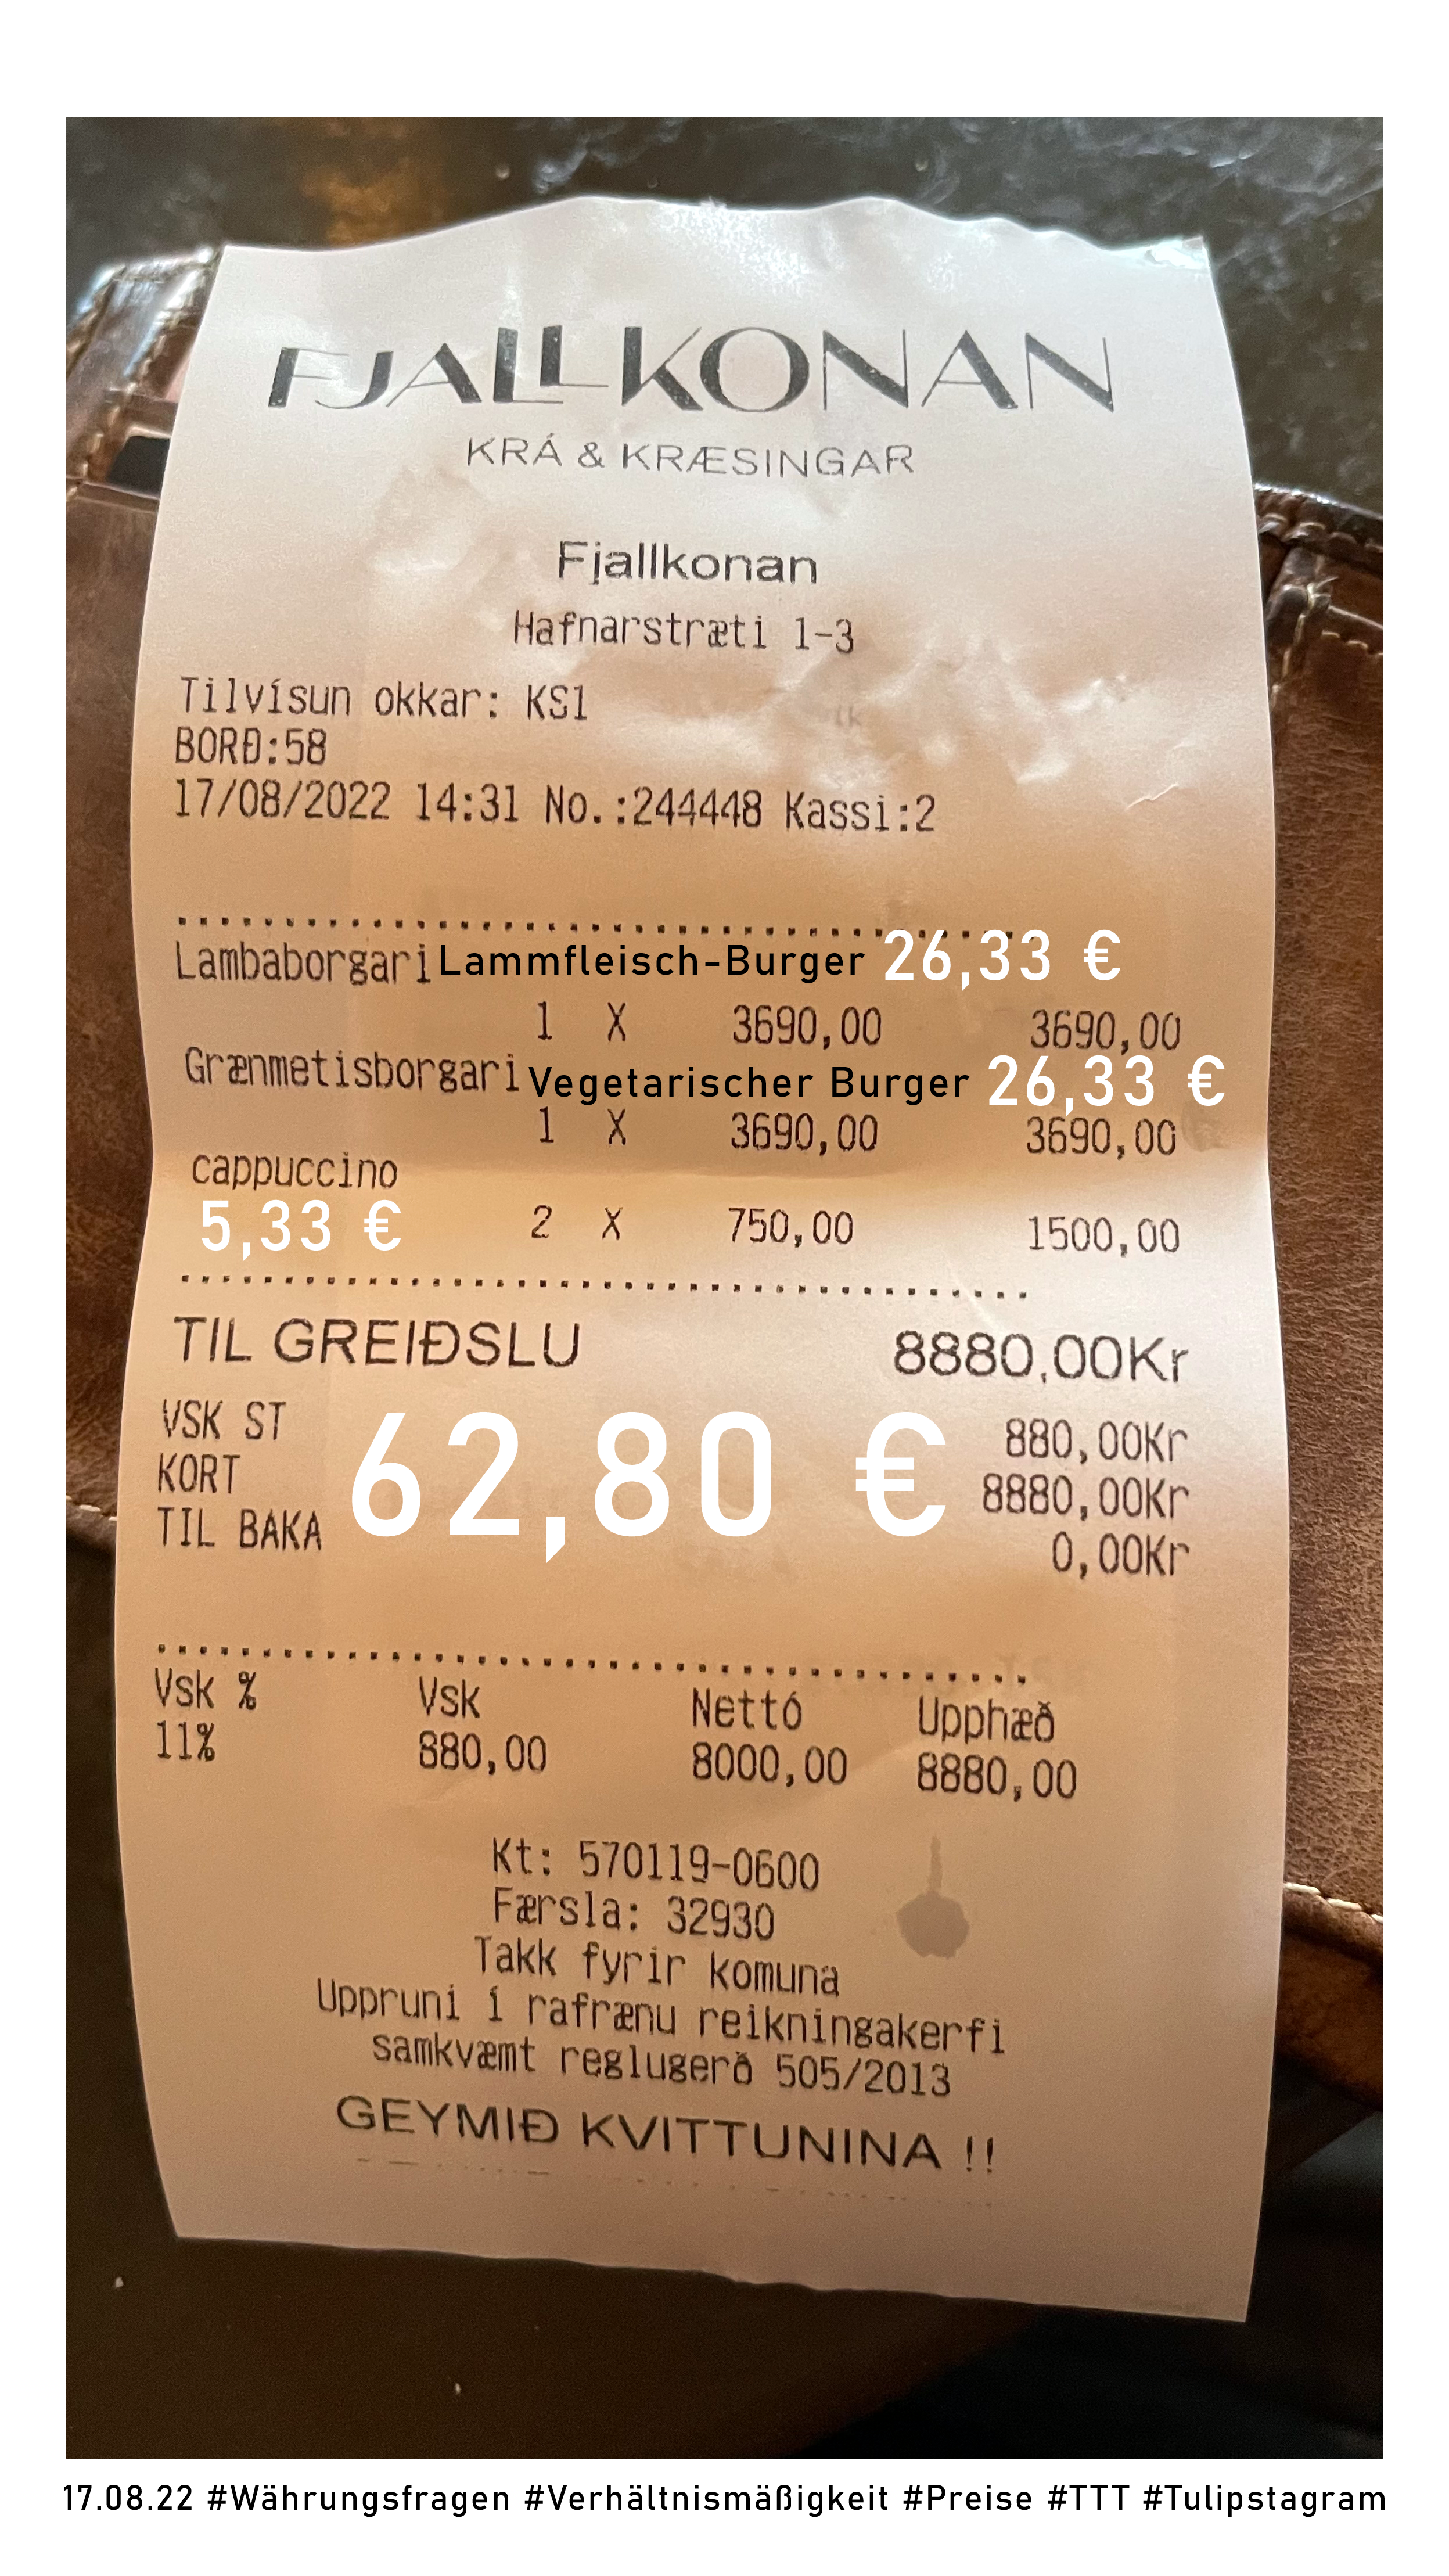 17.08.22 #Währungsfragen #Verhältnismäßigkeit #Preise #TTT #Tulipstagram